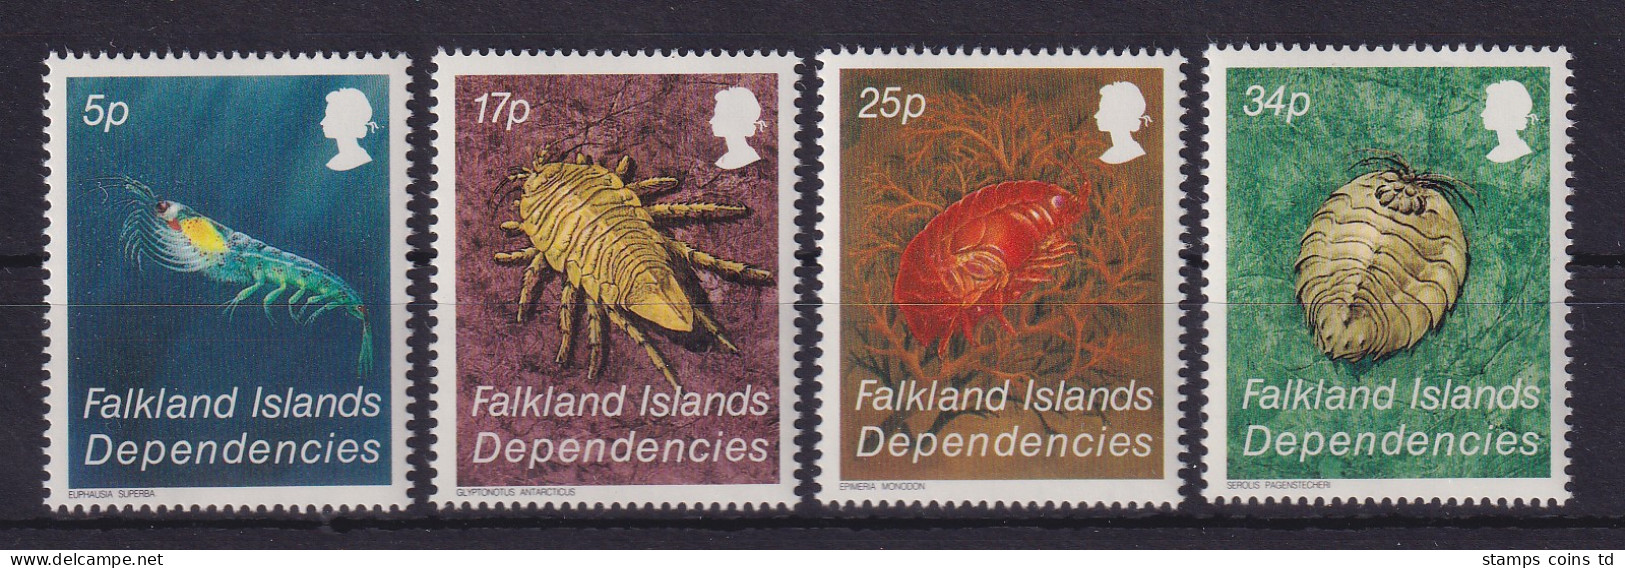 Falkland-Inseln Dependencies 1984 Krebstiere Mi.-Nr. 121-124 Postfrisch ** - Georgia Del Sud